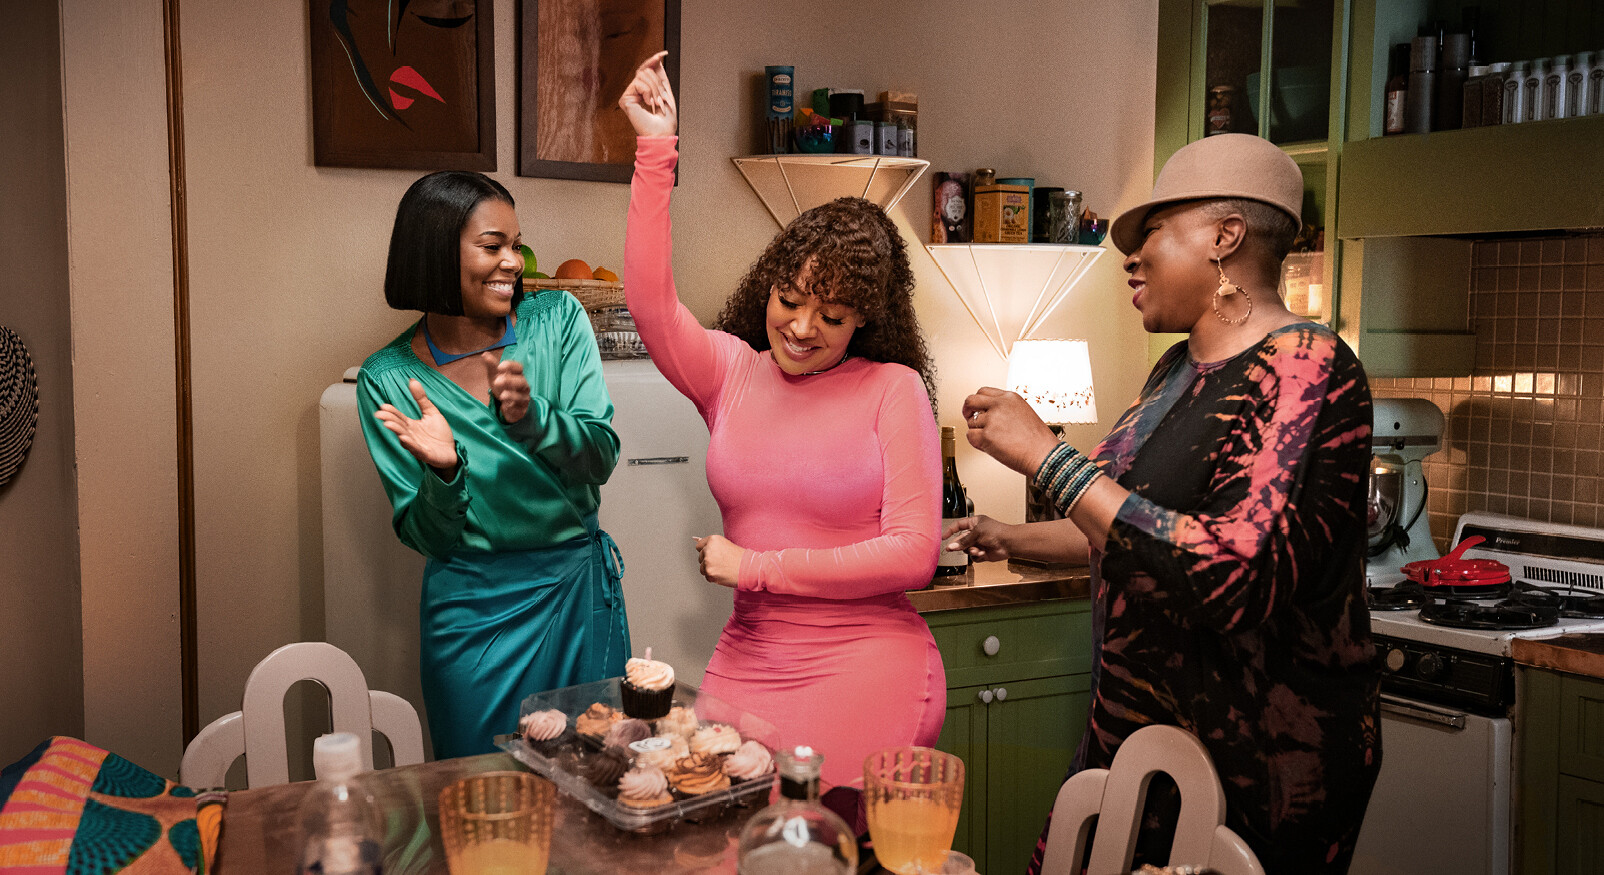 FIlm Netflix vrouwen dansen in de keuken roze jurk en wijn